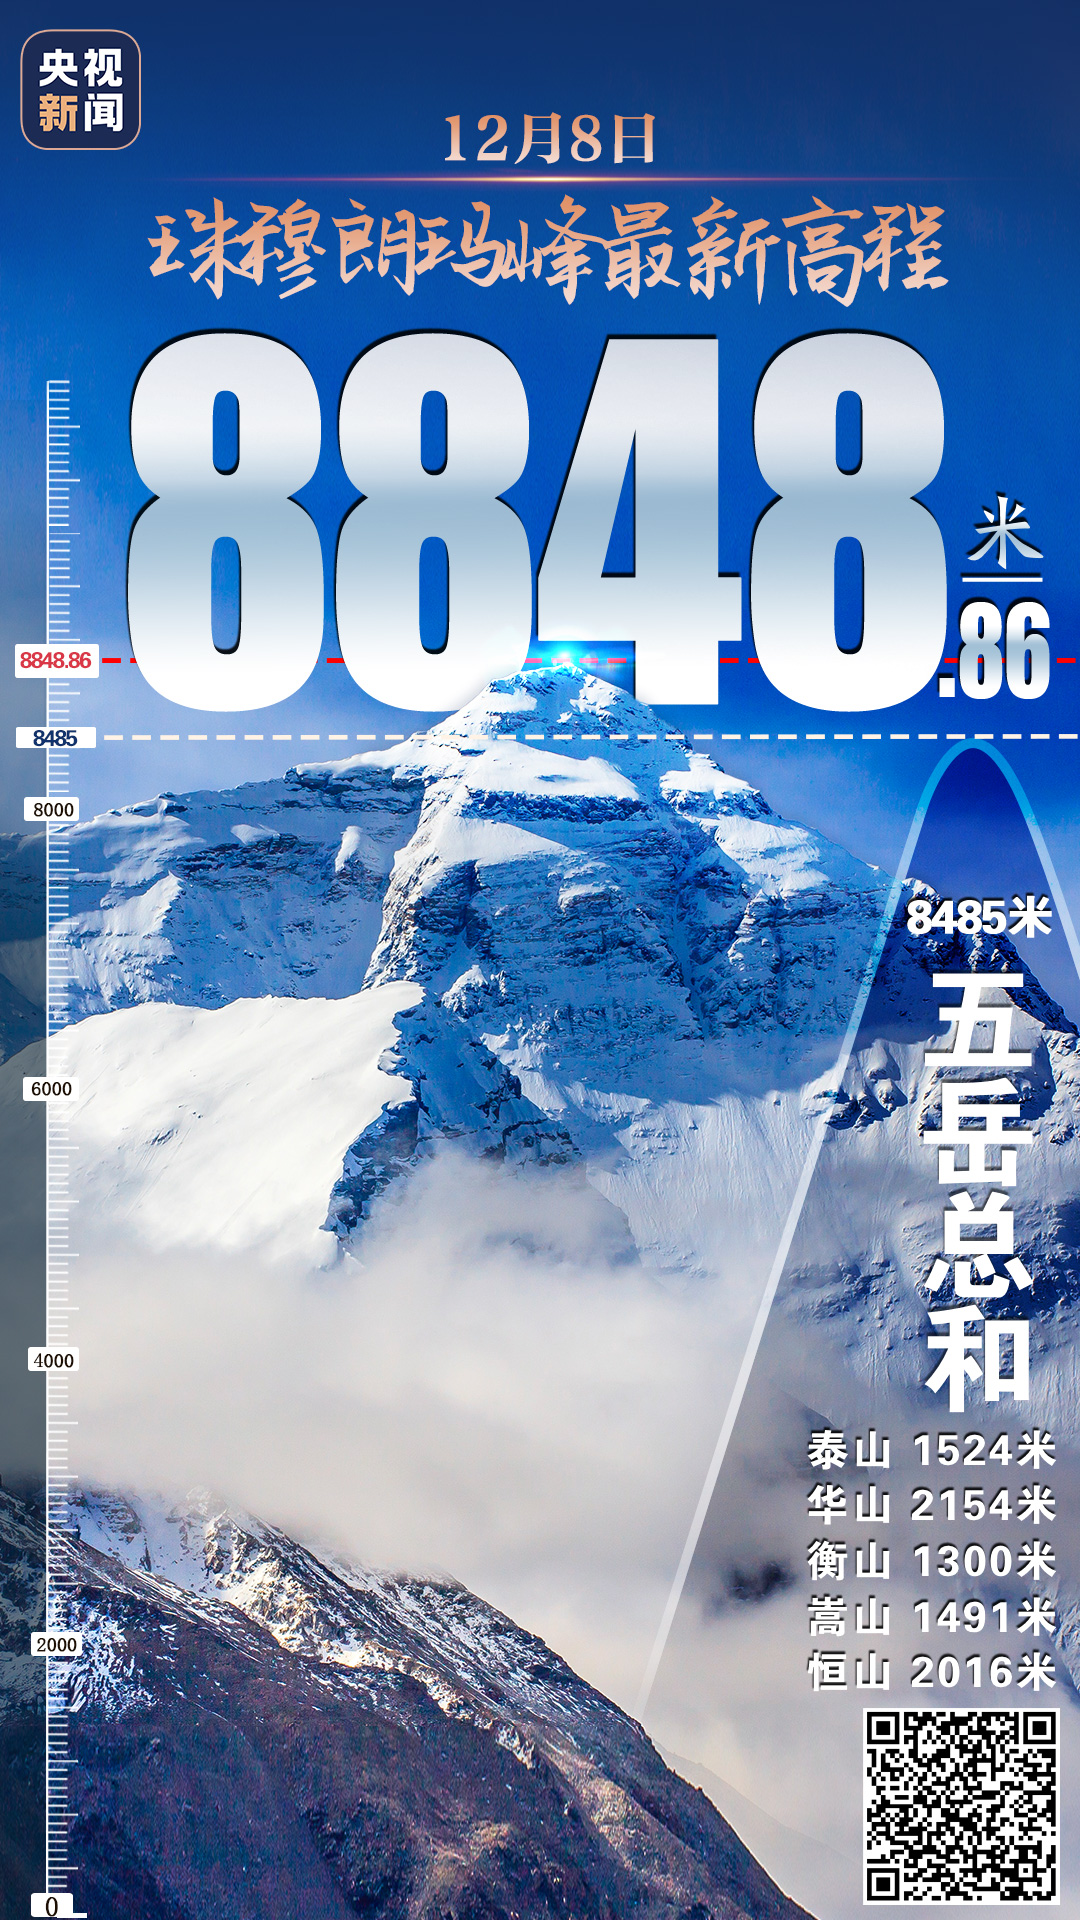 珠峰!8848.86米